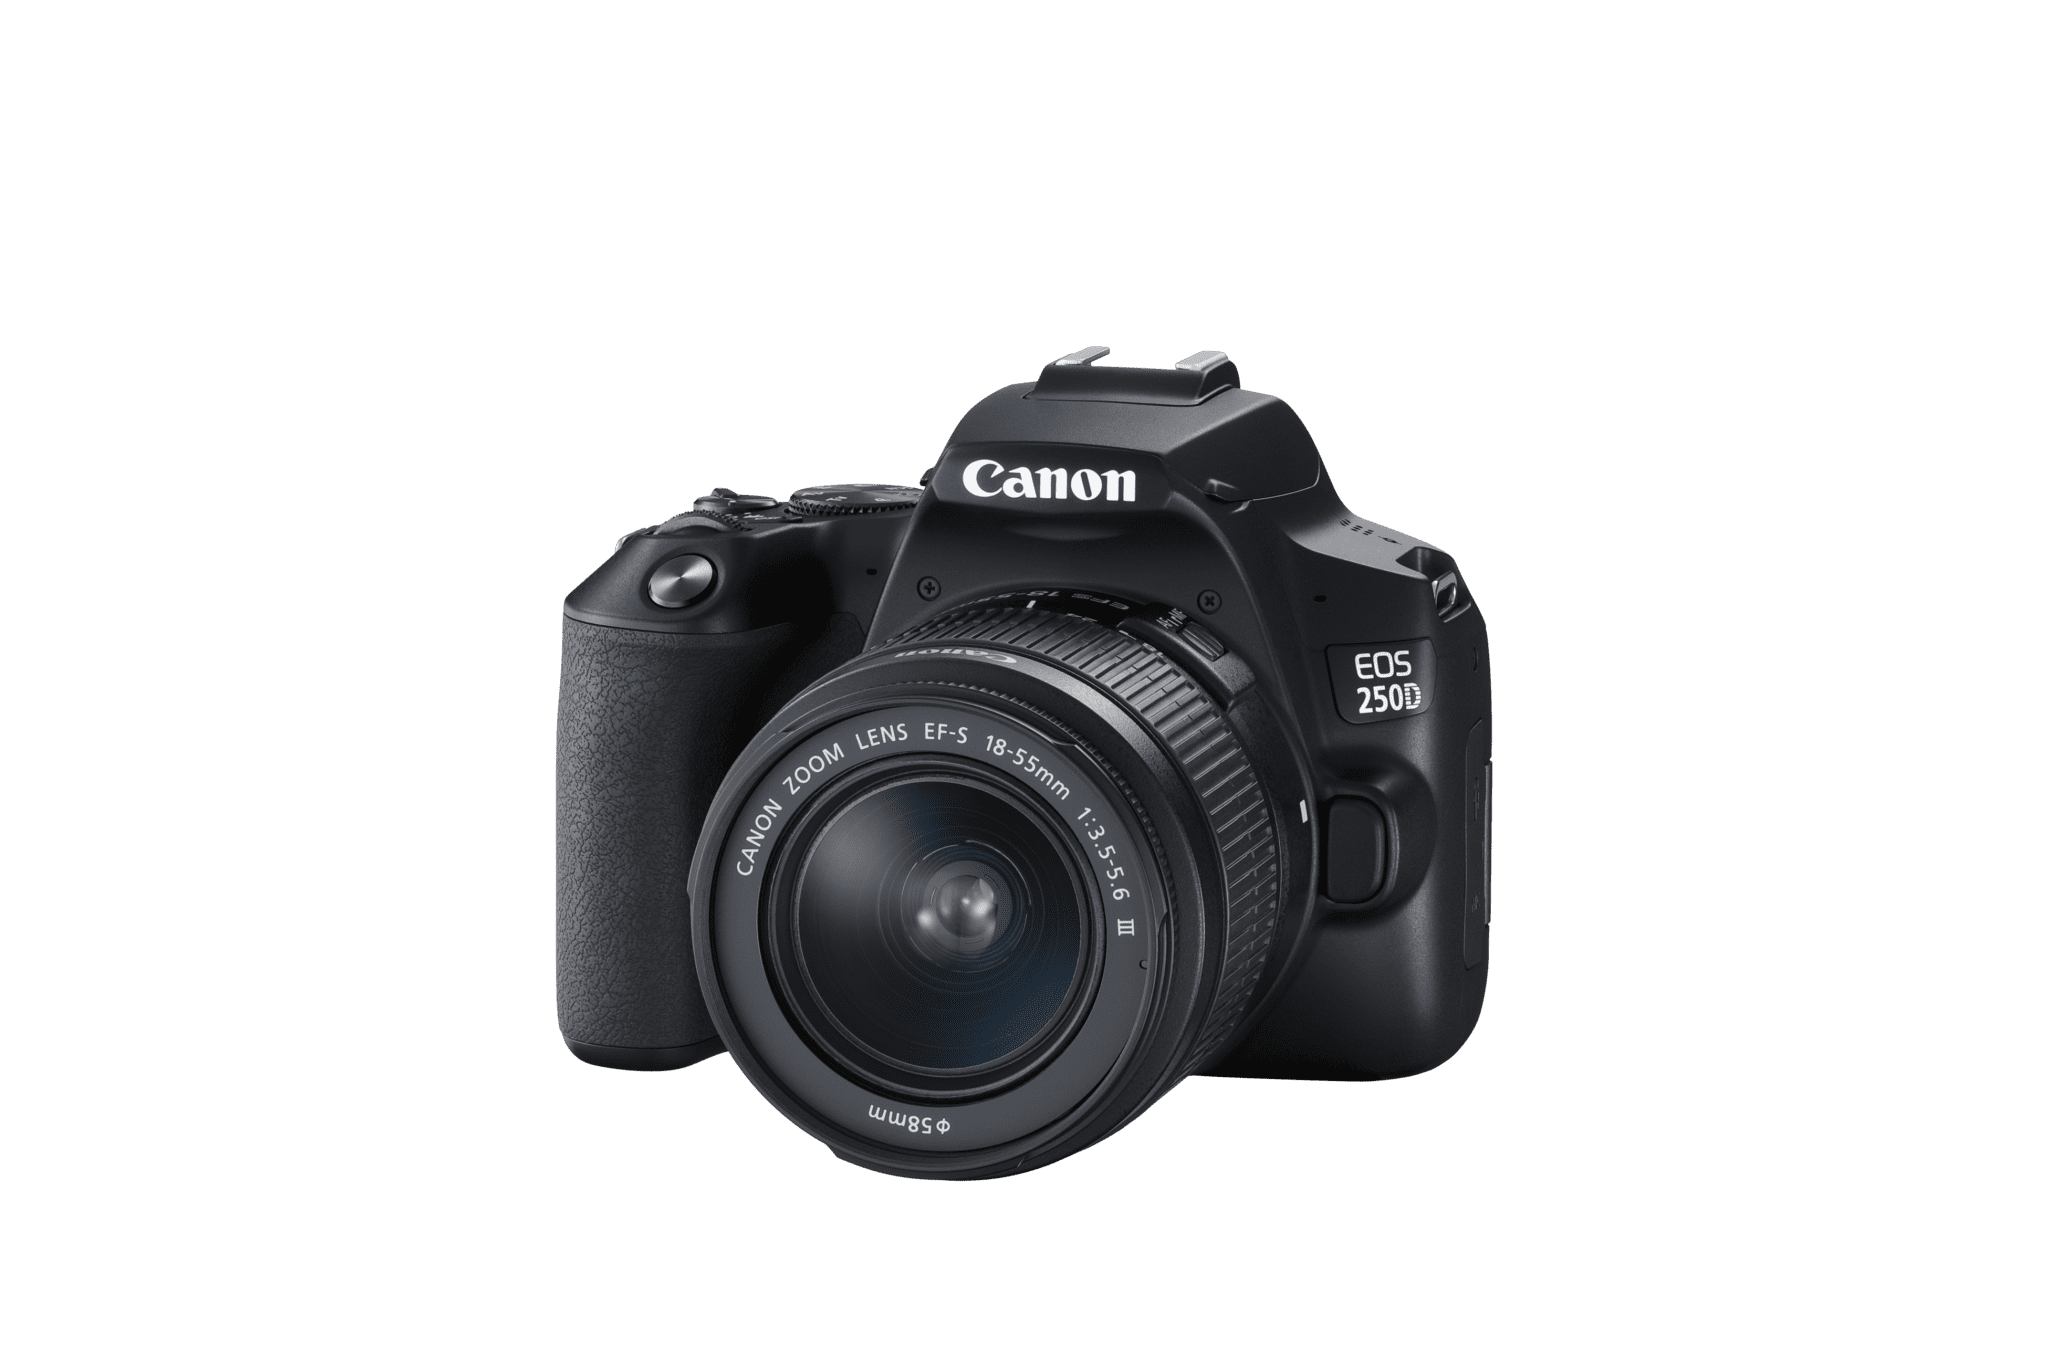  Canon Europe anunţă lansarea modelului Canon EOS 250D